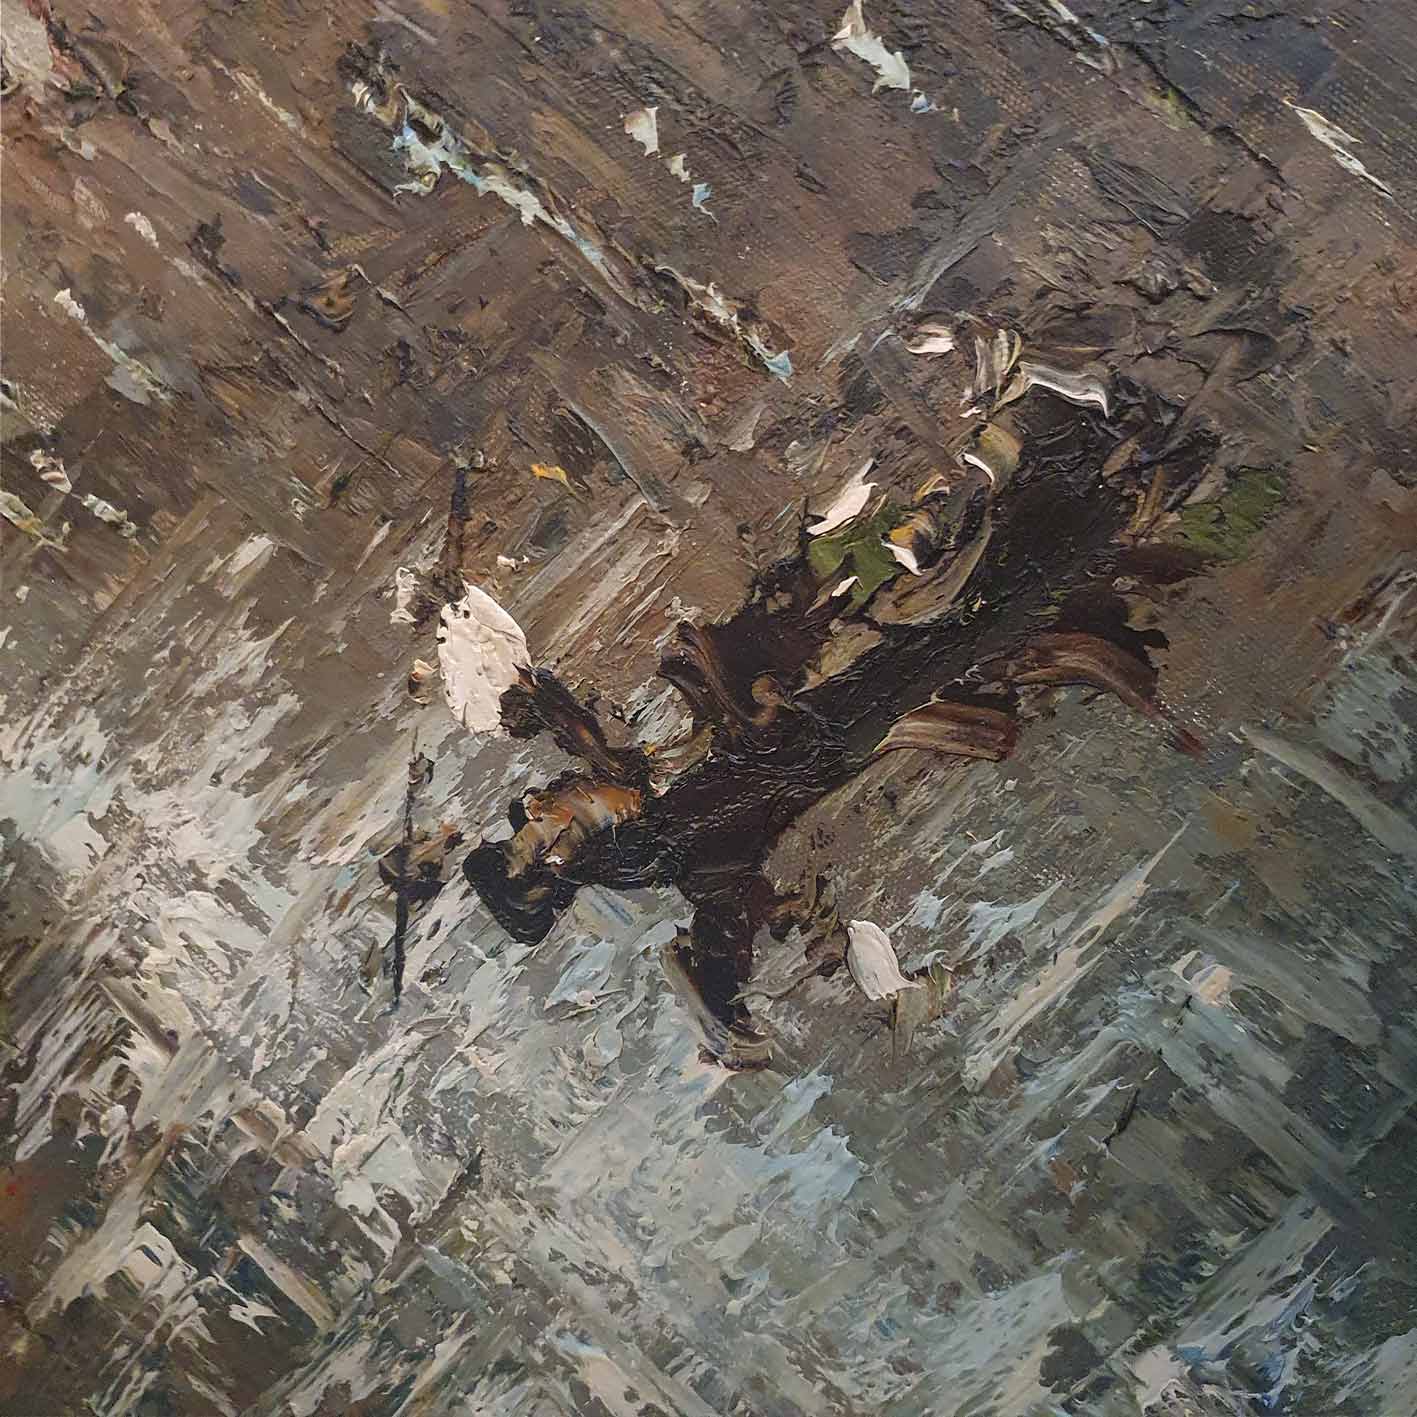 Gemälde „Gondel von Venedig“ 60x90 cm